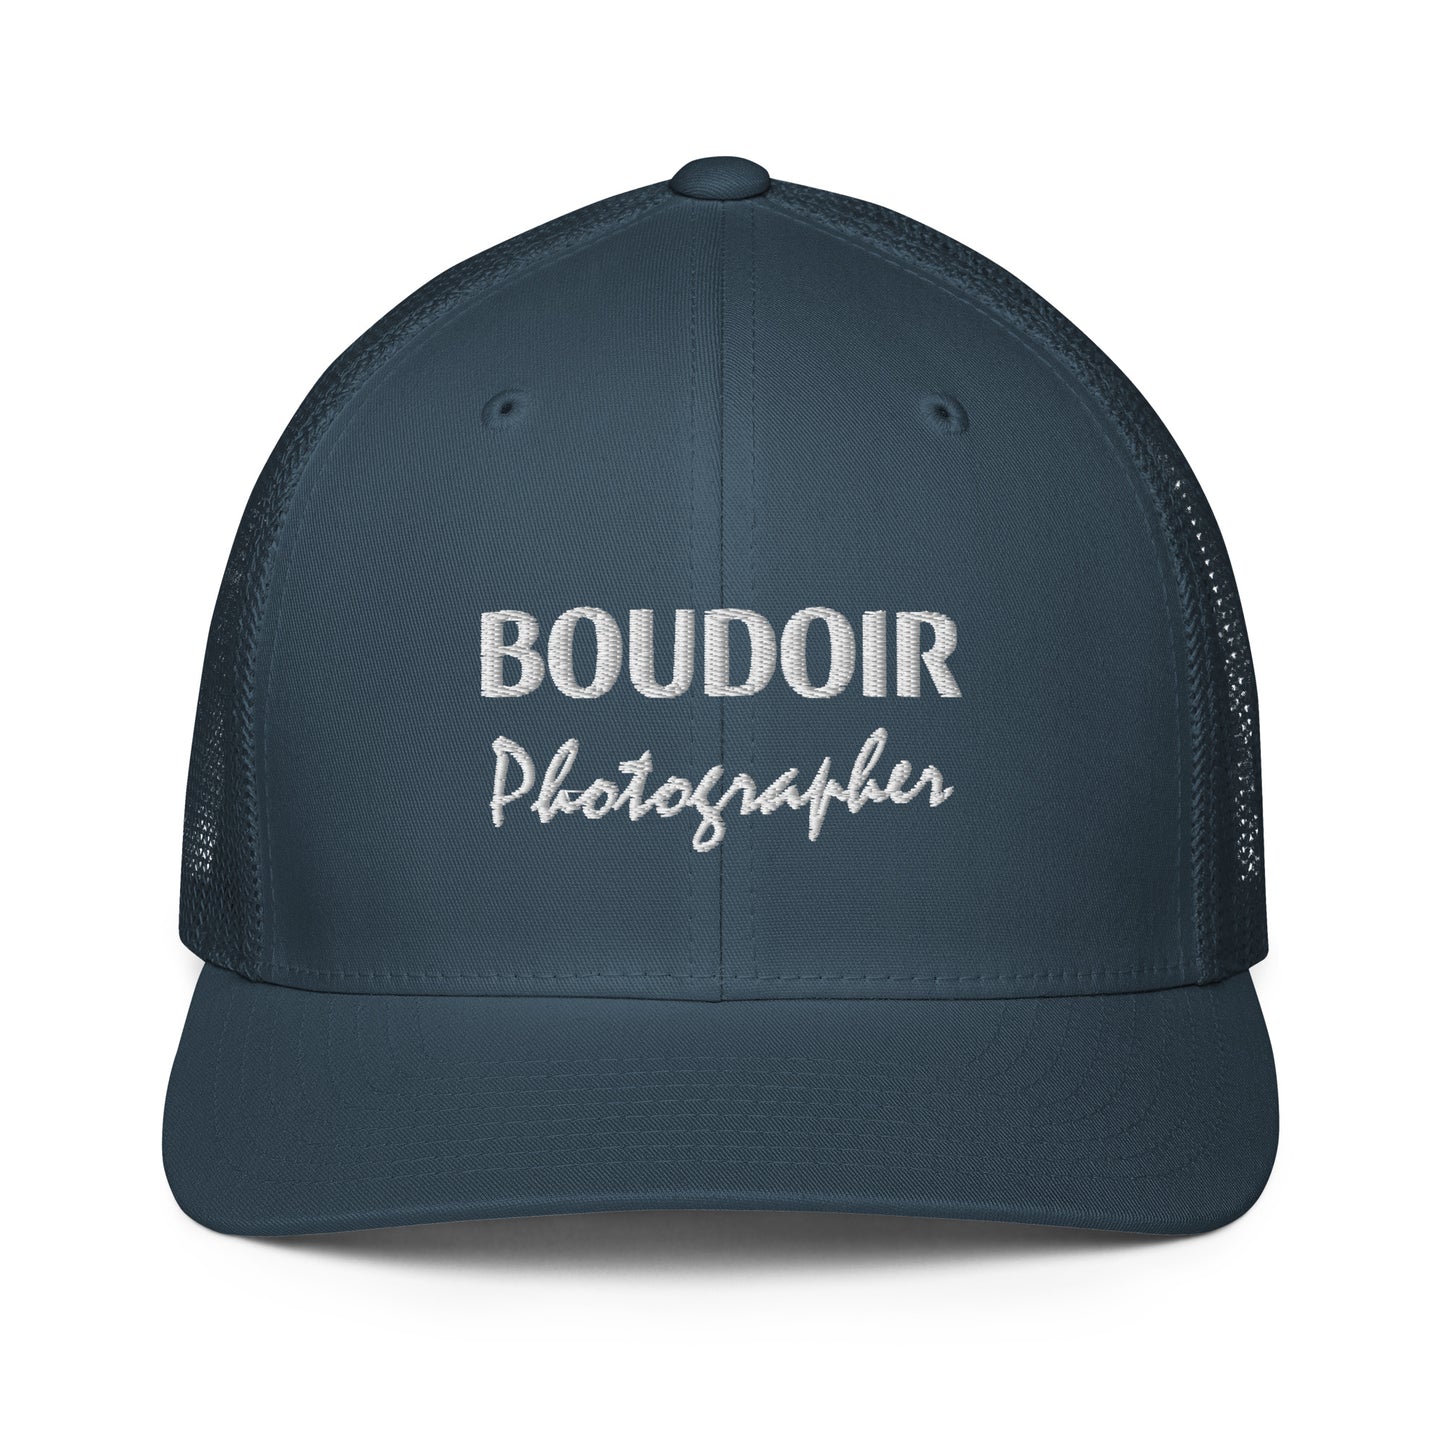 Boudoir Photographer - Cap